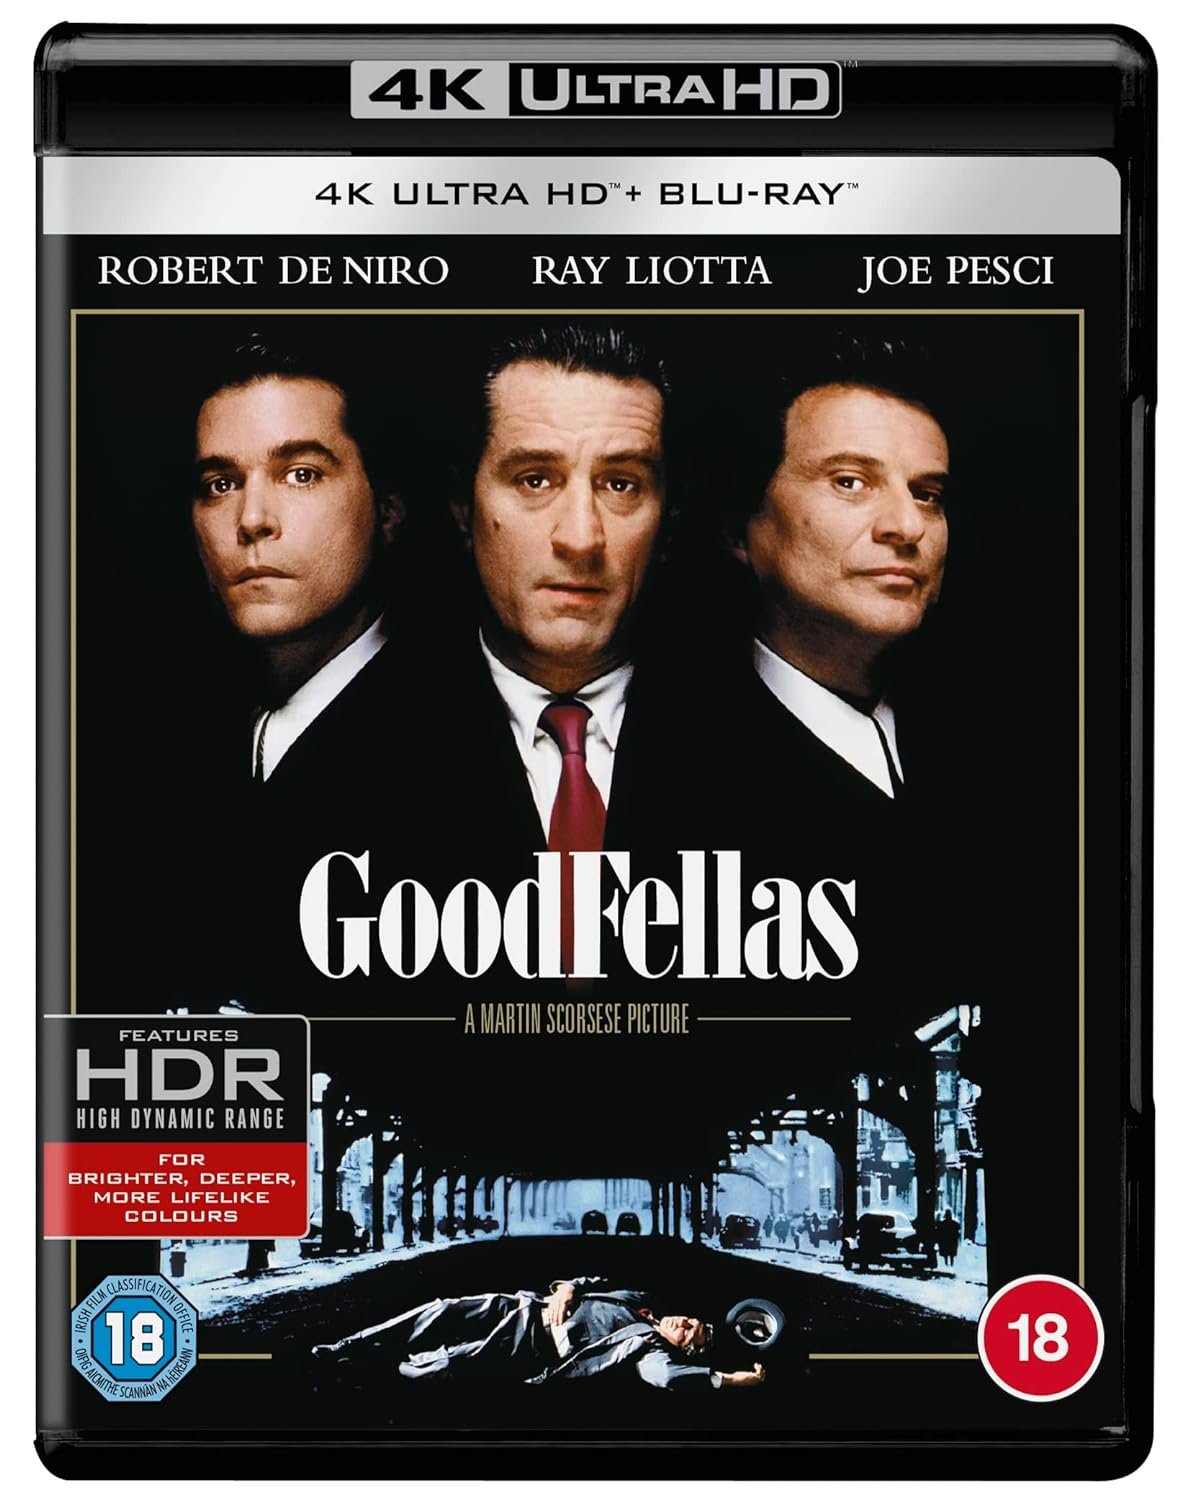 Goodfellas [4K UHD] [2016] [Blu-ray]